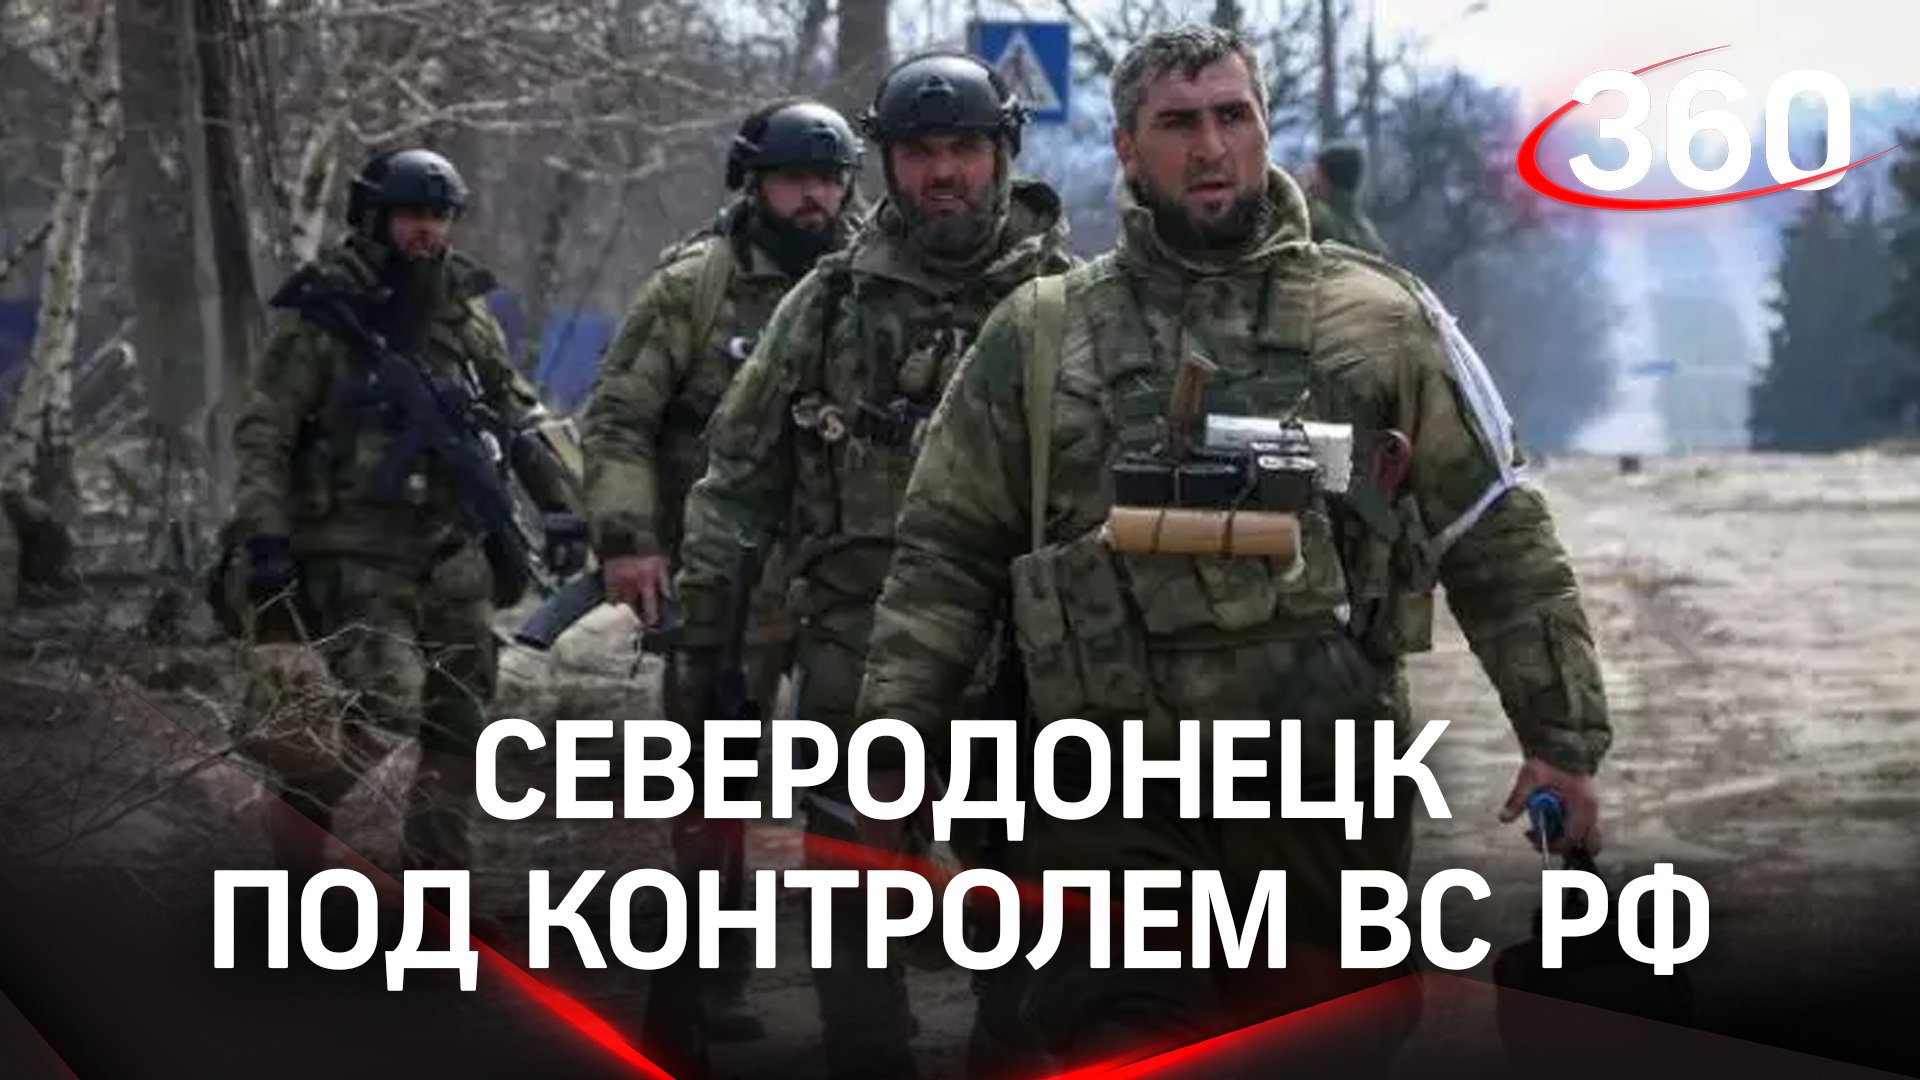 Вооруженные силы России освободили Северодонецк